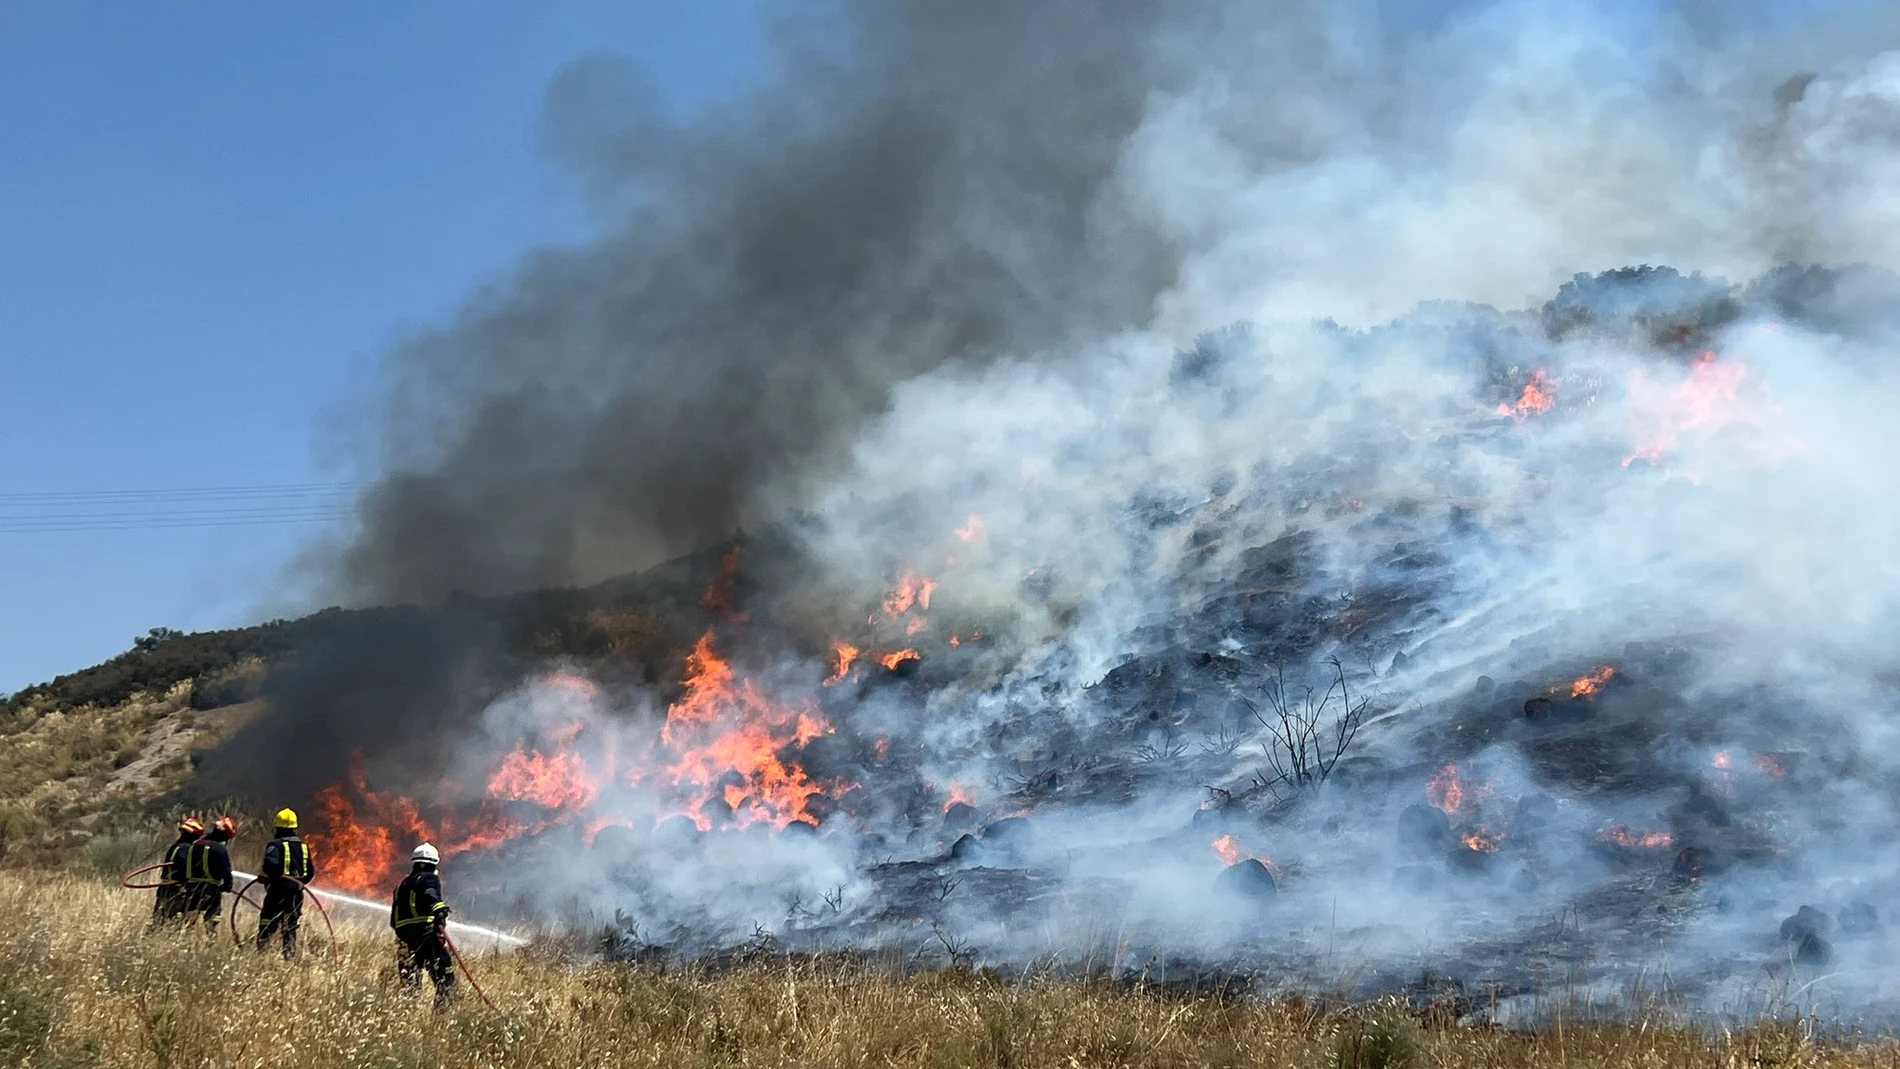 Incendio forestal de Aranjuez: precaución al circular por la A-4 antes de llegar al kilómetro 49, sentido Madrid 